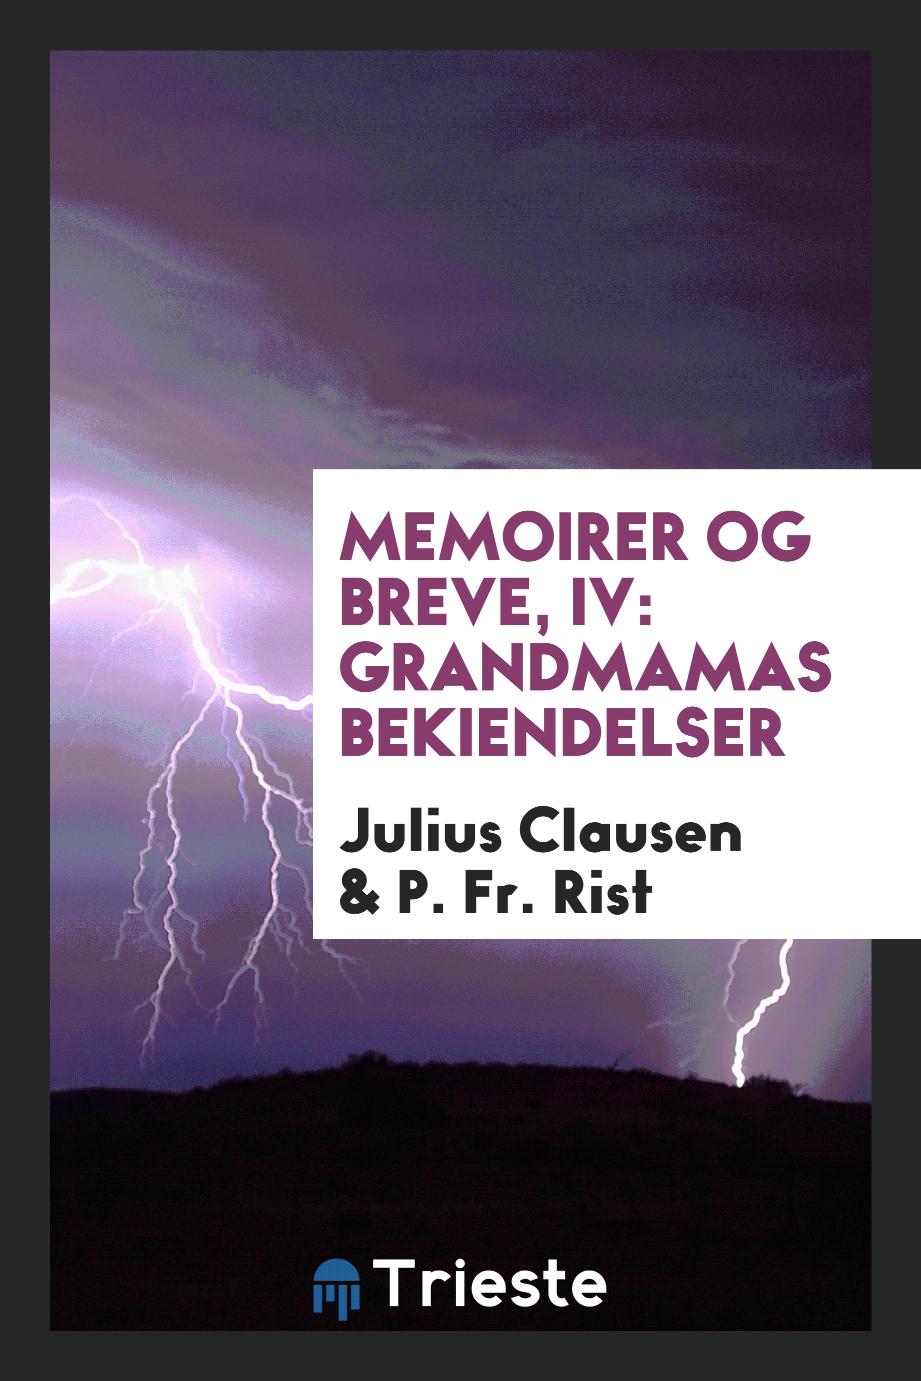 Memoirer og breve, IV: Grandmamas bekiendelser